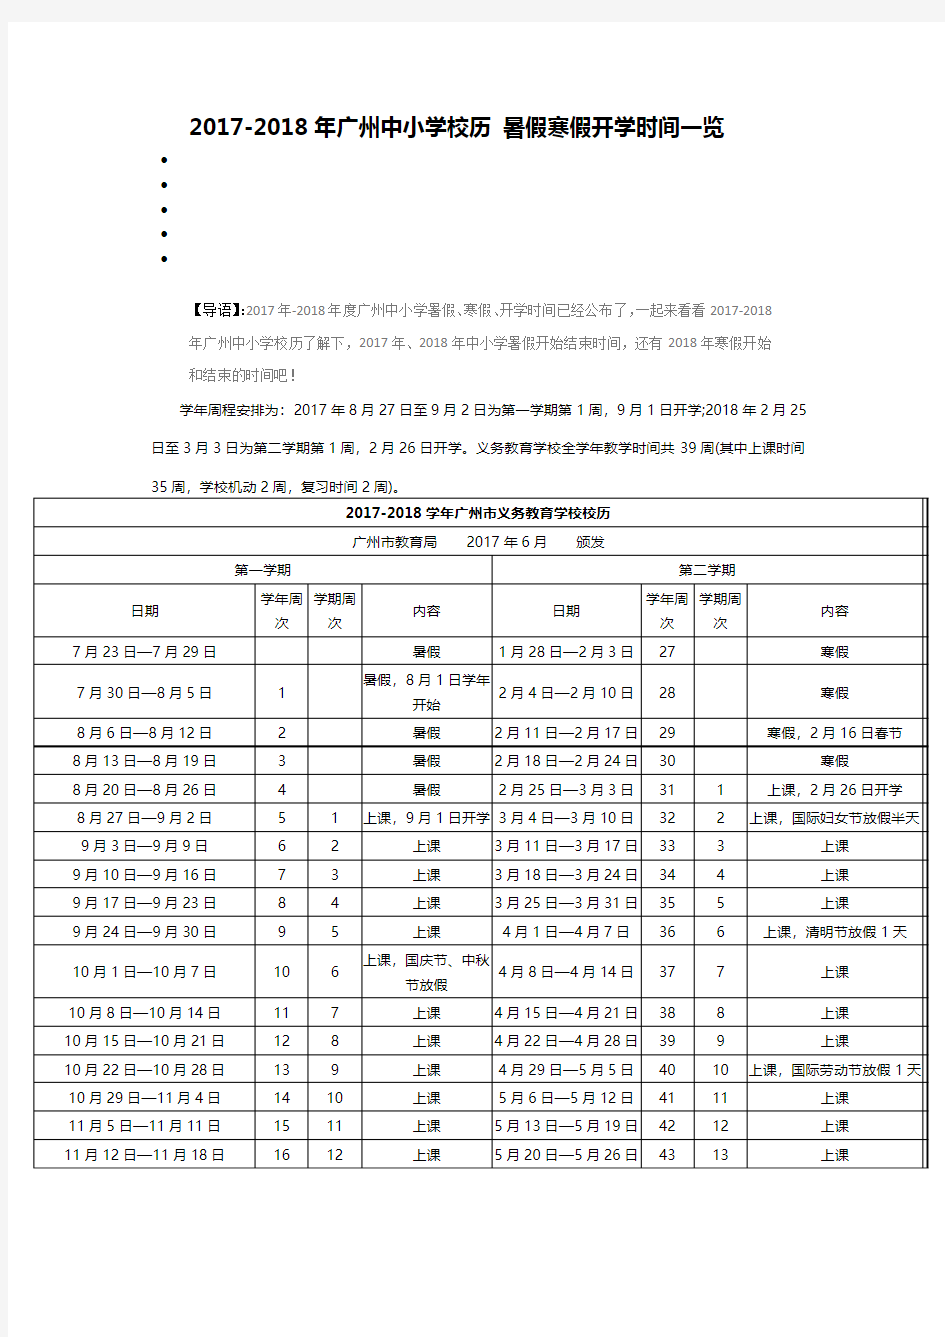 2017-2018广州中小学校历